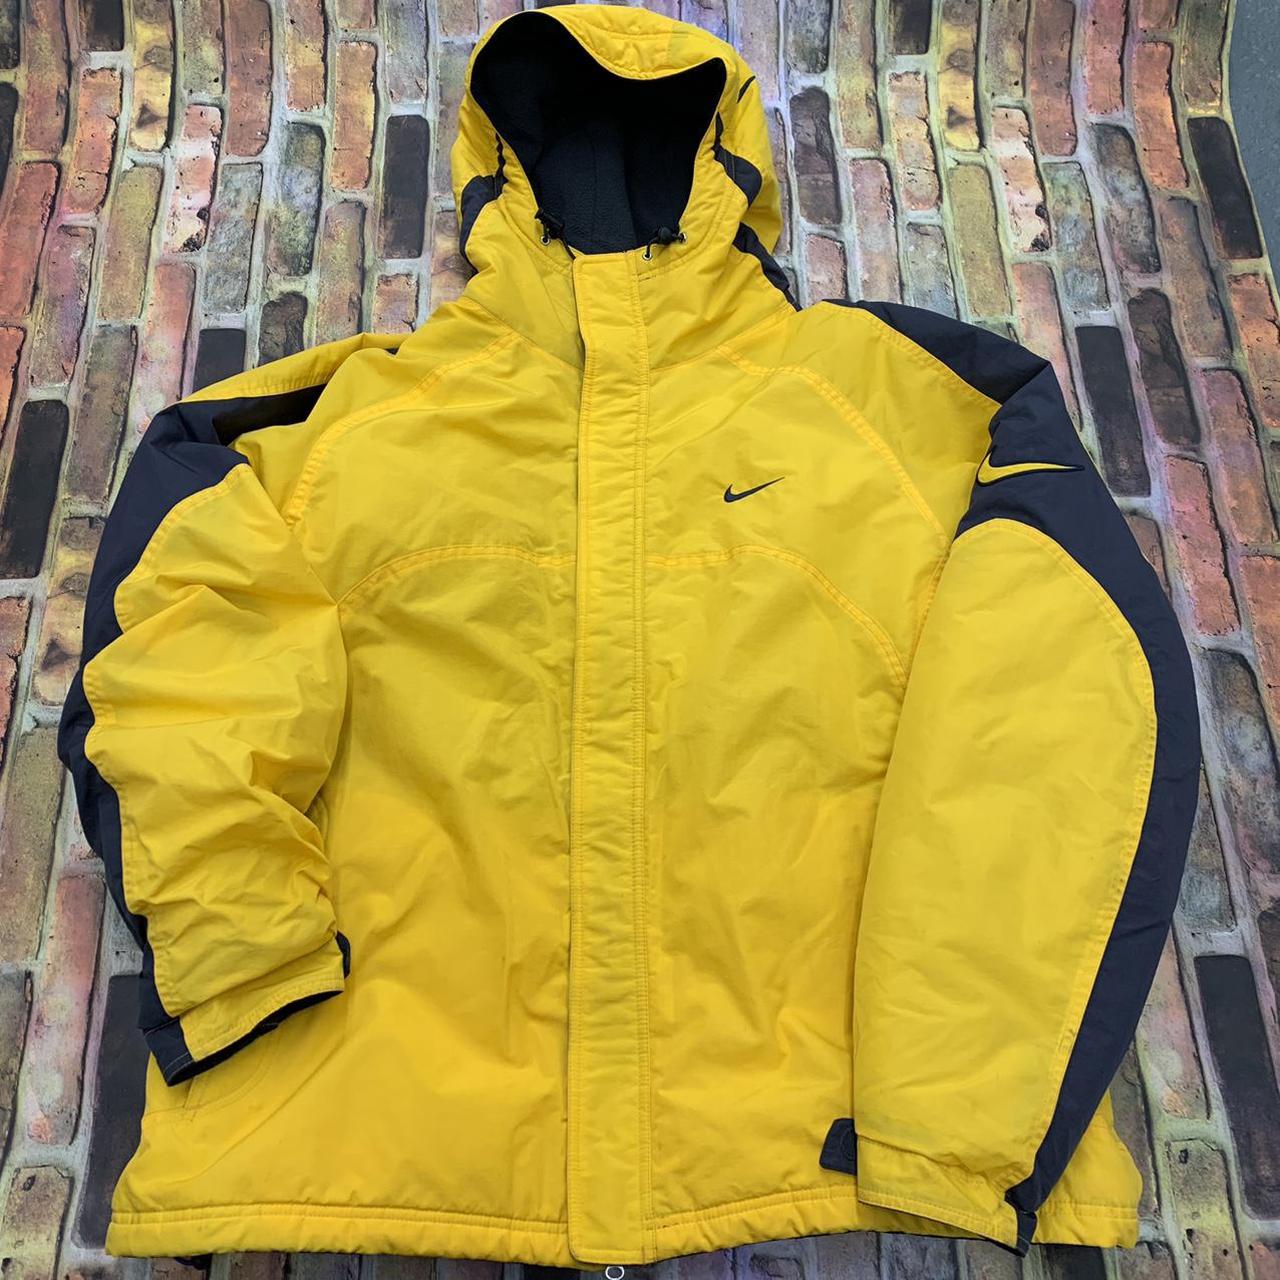 Vintage Nike jacket in yellow. Y2K early Depop